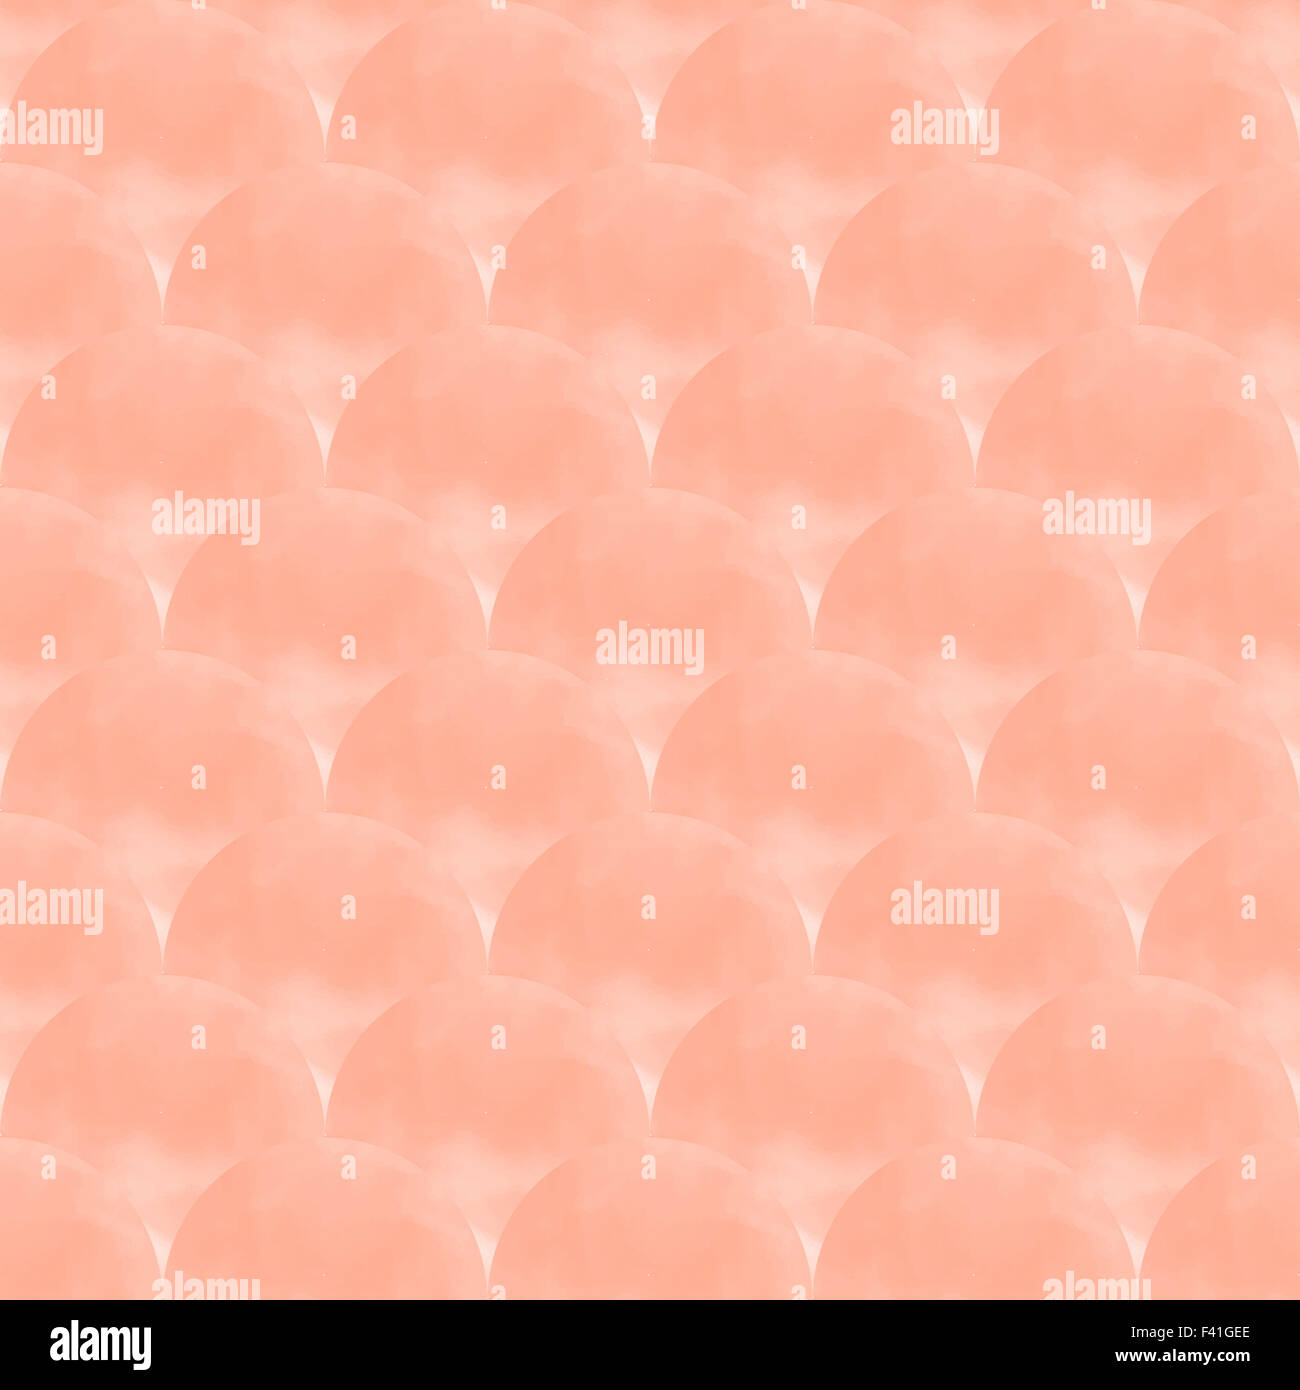 seamless pattern. Abstract stylish background Stock Photo